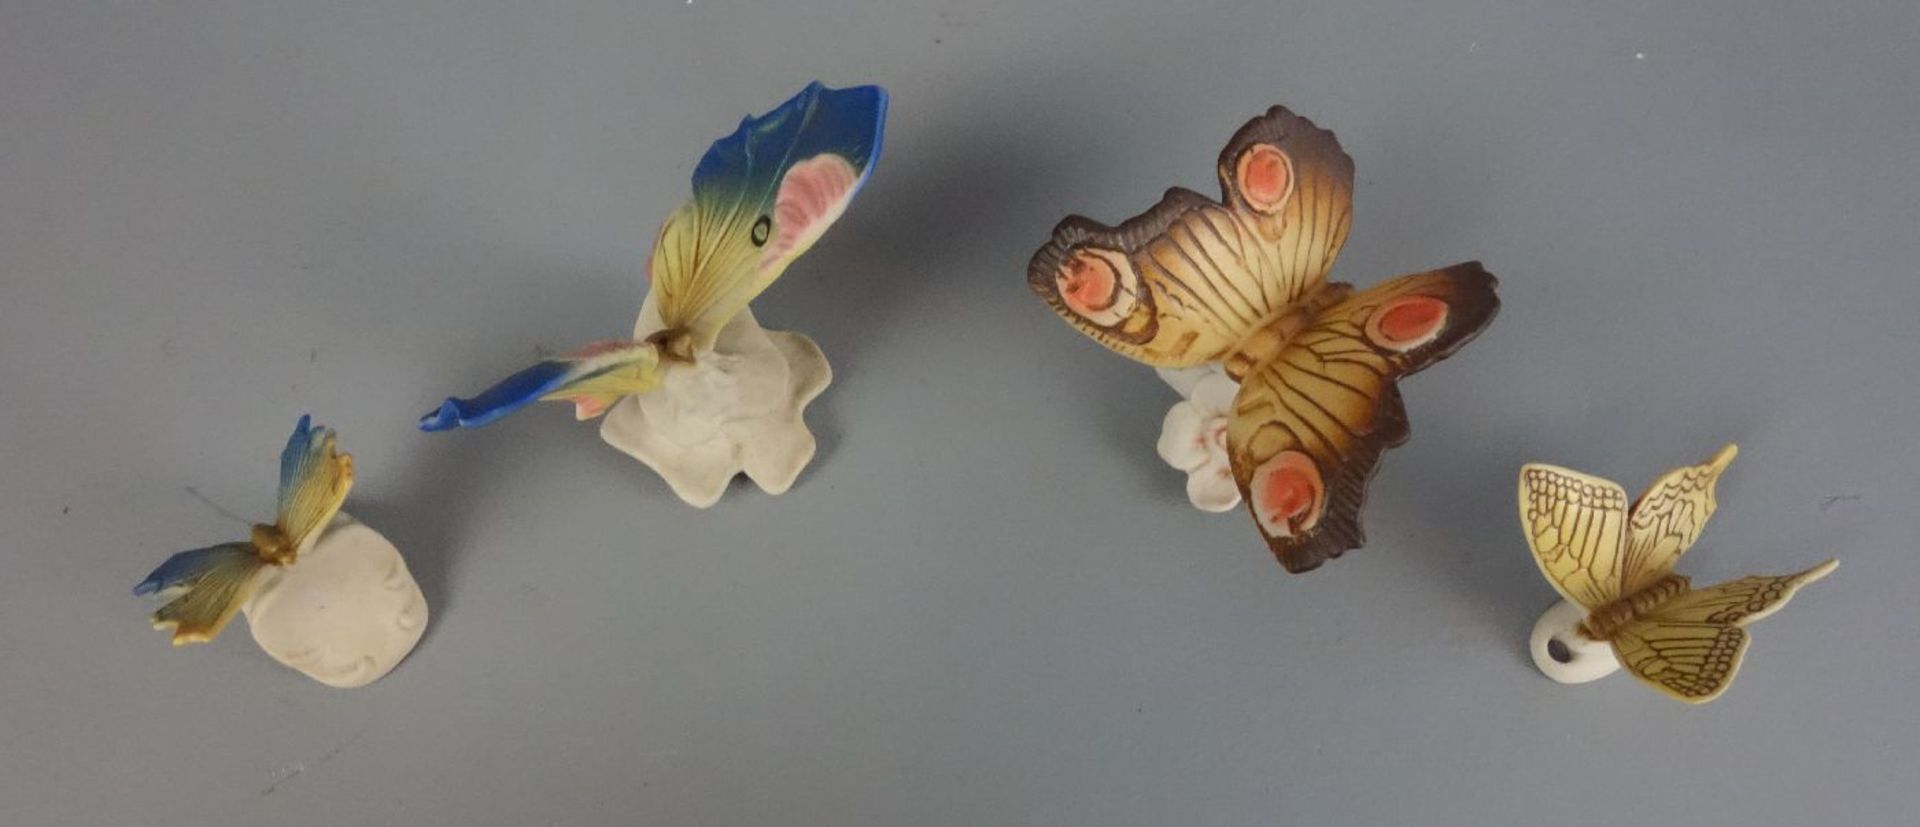 VIERTEILIGES KONVOLUT SCHMETTERINGE / butterflies, Biskuitporzellan, 2. Hälfte 20. Jh., Ens - Bild 2 aus 4